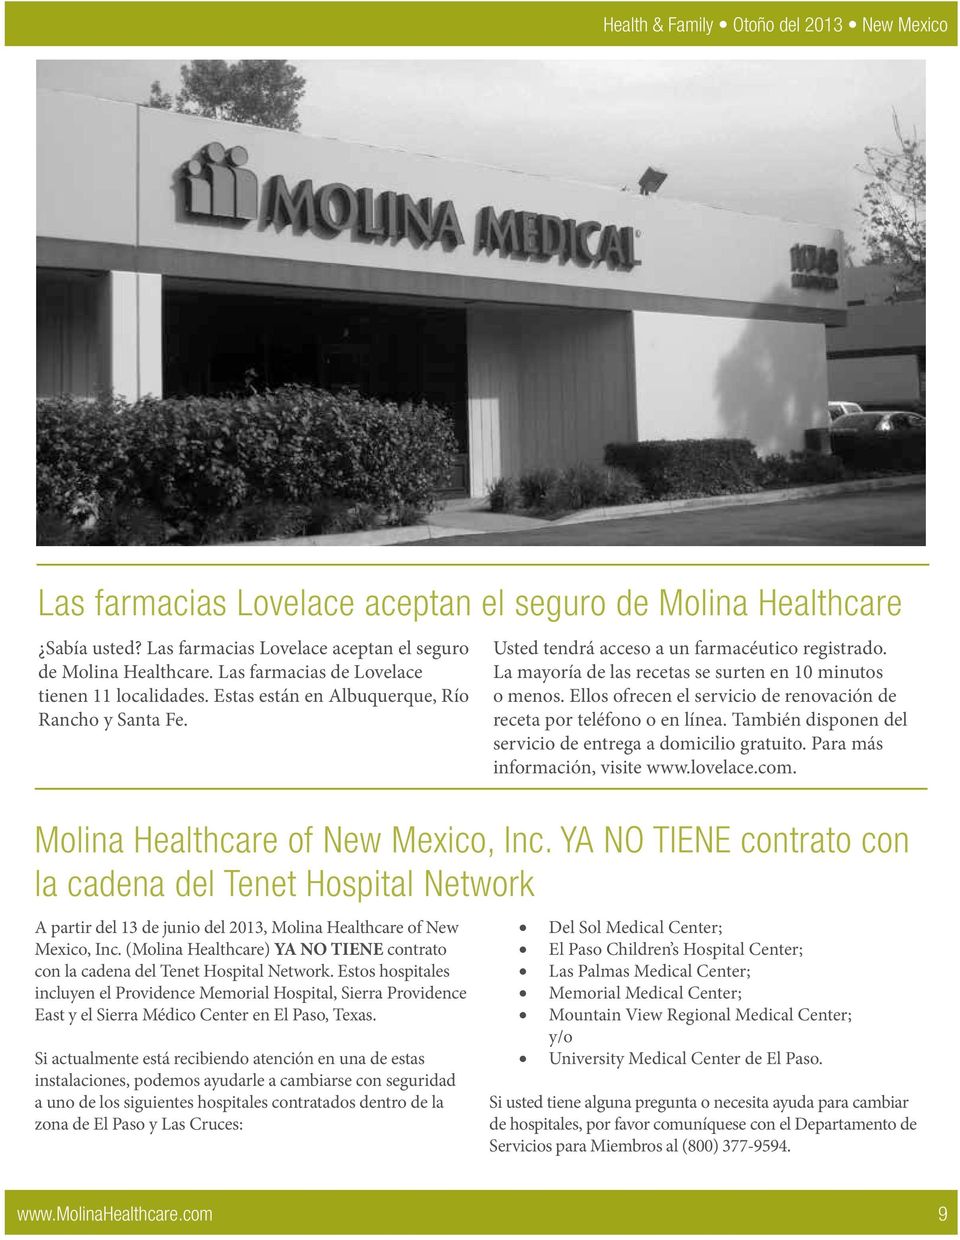 YA NO TIENE contrato con la cadena del Tenet Hospital Network A partir del 13 de junio del 2013, Molina Healthcare of New Mexico, Inc.